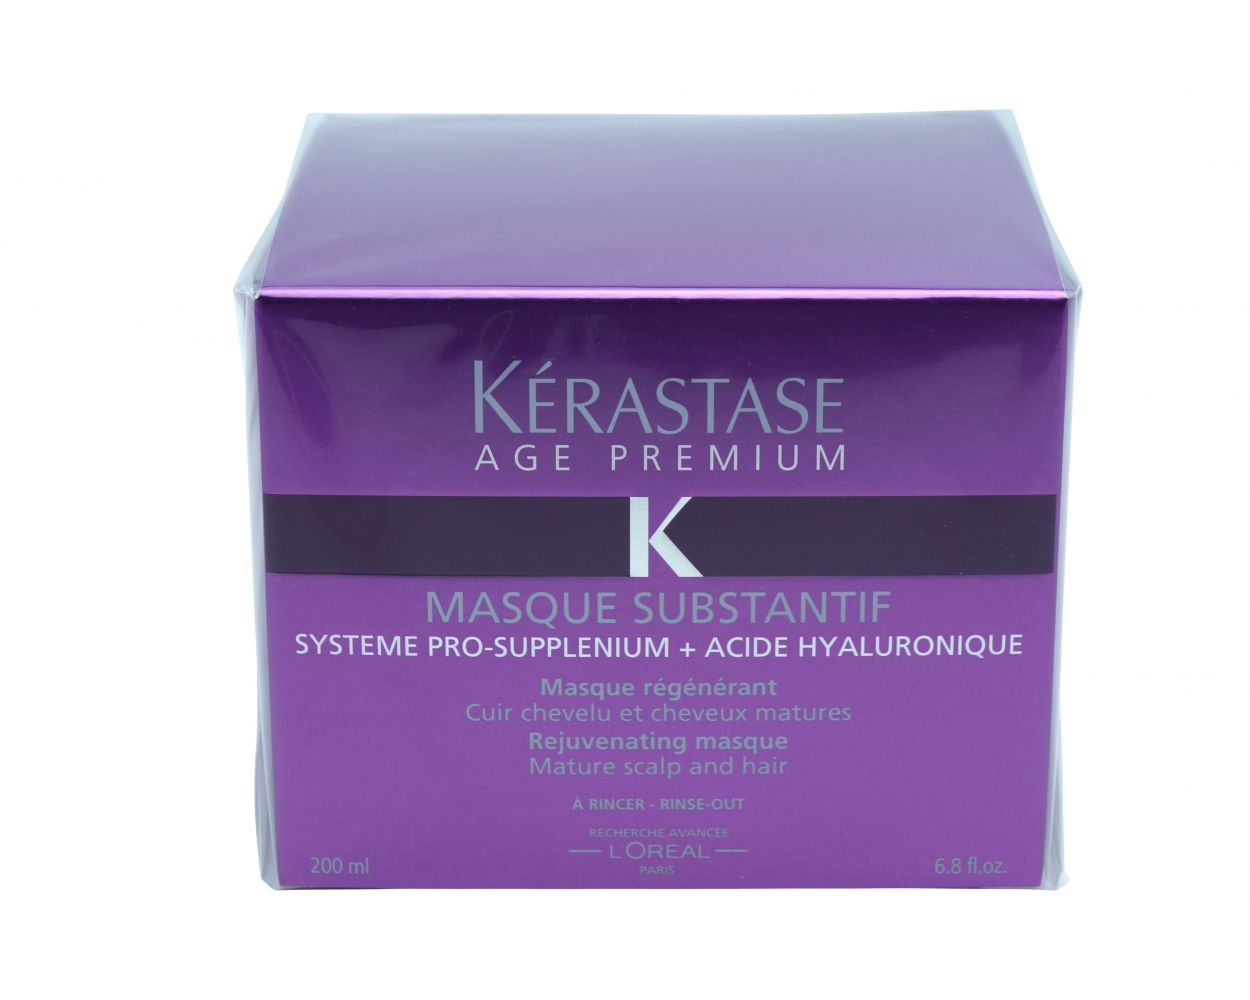 Kerastase Age Premium Masque Substantif For Mature Scalps And Hair | Skincare